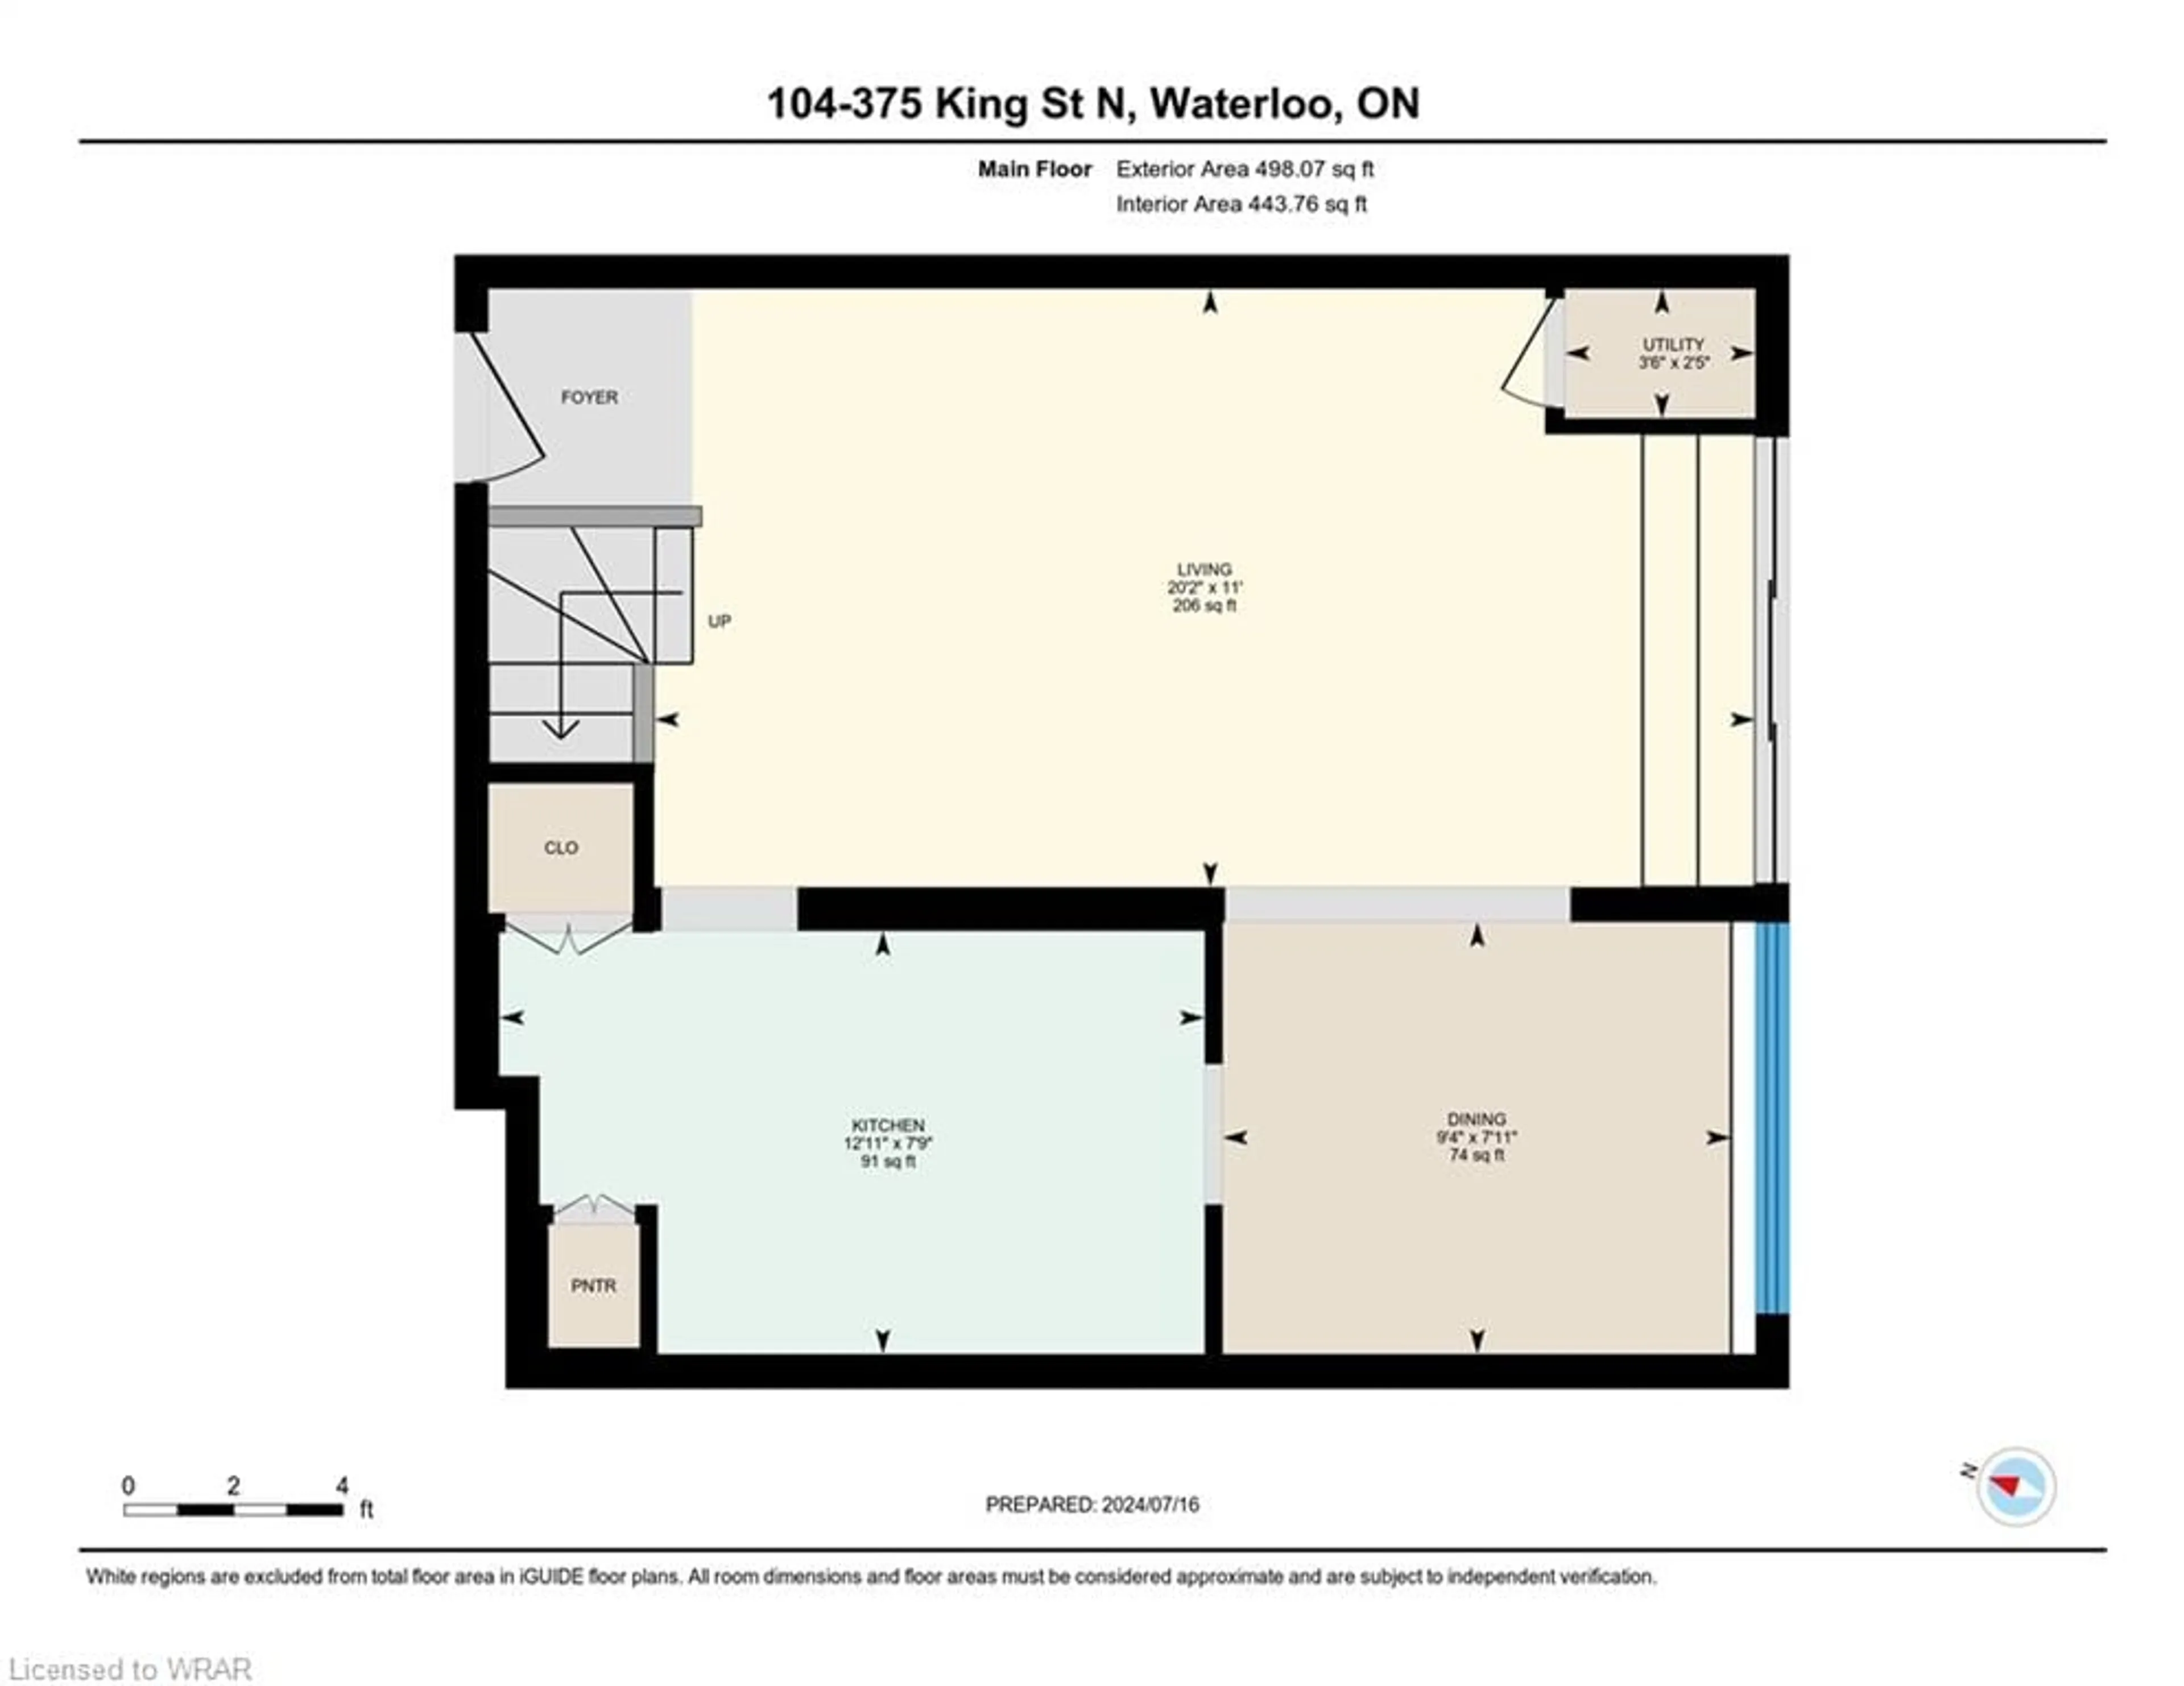 Floor plan for 375 King St #104, Waterloo Ontario N2J 4L6